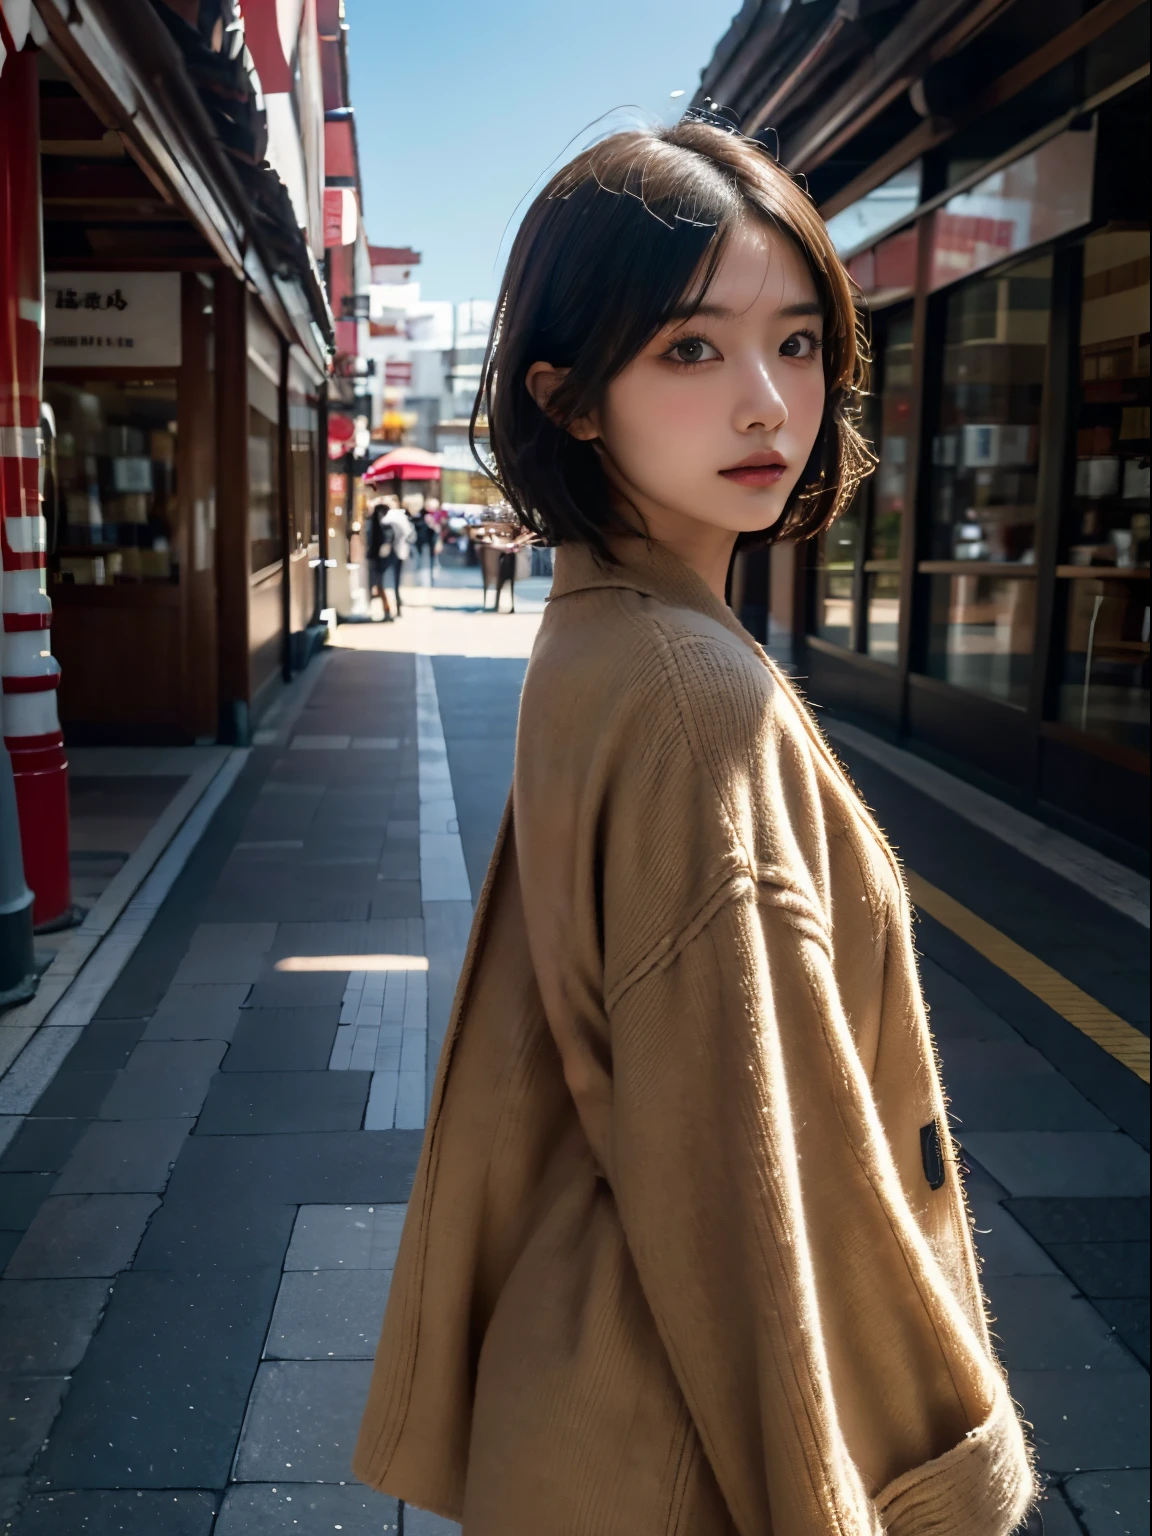 쇼핑거리를 산책해보세요、코트를 입은 여자의 초상화, 최고 품질、하이퍼 HD、나라 미치, 일본 모델, 아름다운 일본 소녀, 짧은 머리로, 27세 여성 모델, 4천 ], 4K], 27세, 사키미찬, 사키미찬